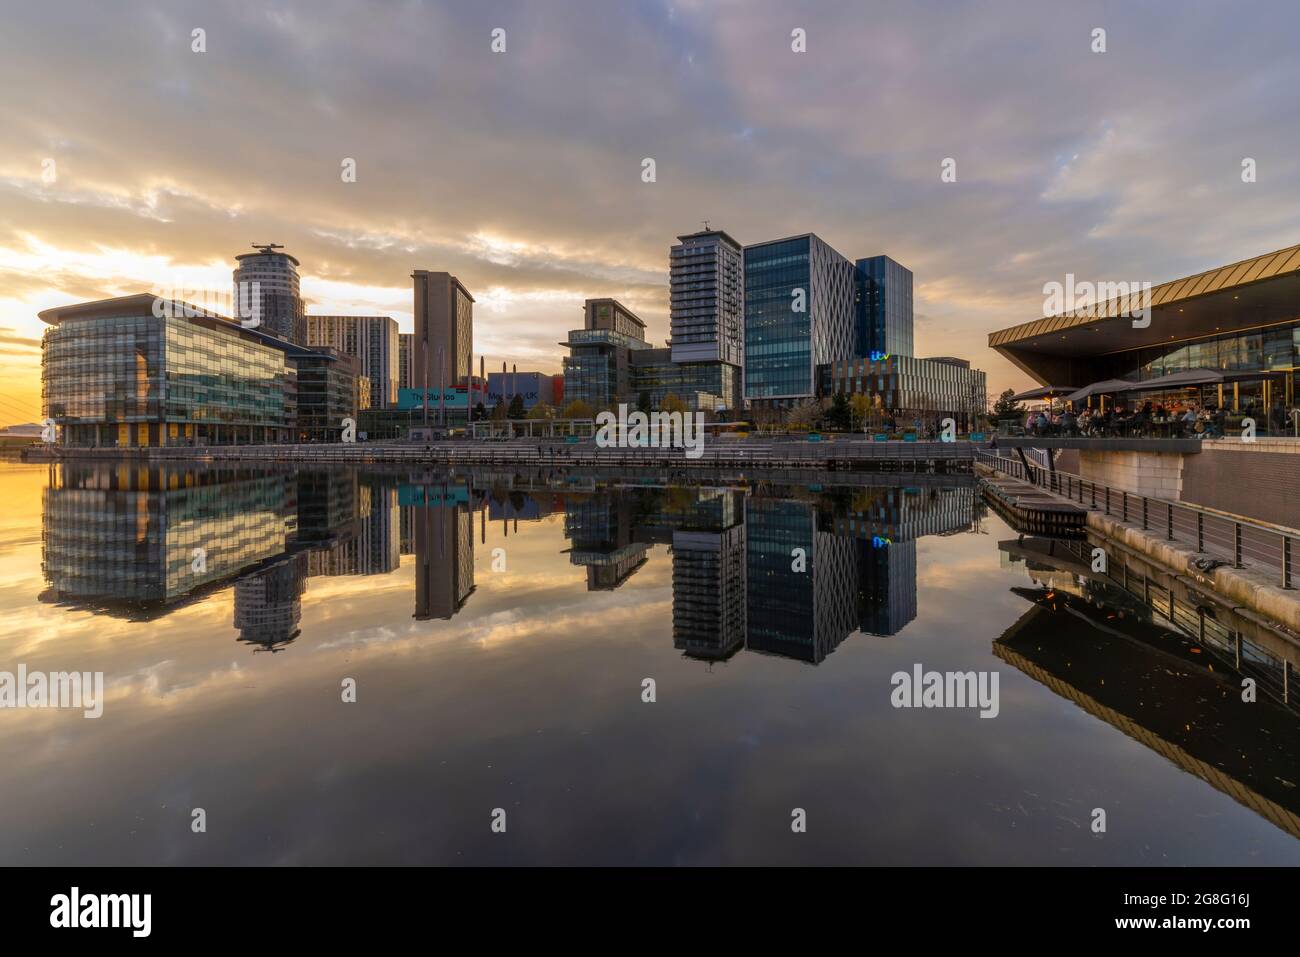 Vue de MediaCity UK au coucher du soleil, Salford Quays, Manchester, Angleterre, Royaume-Uni, Europe Banque D'Images